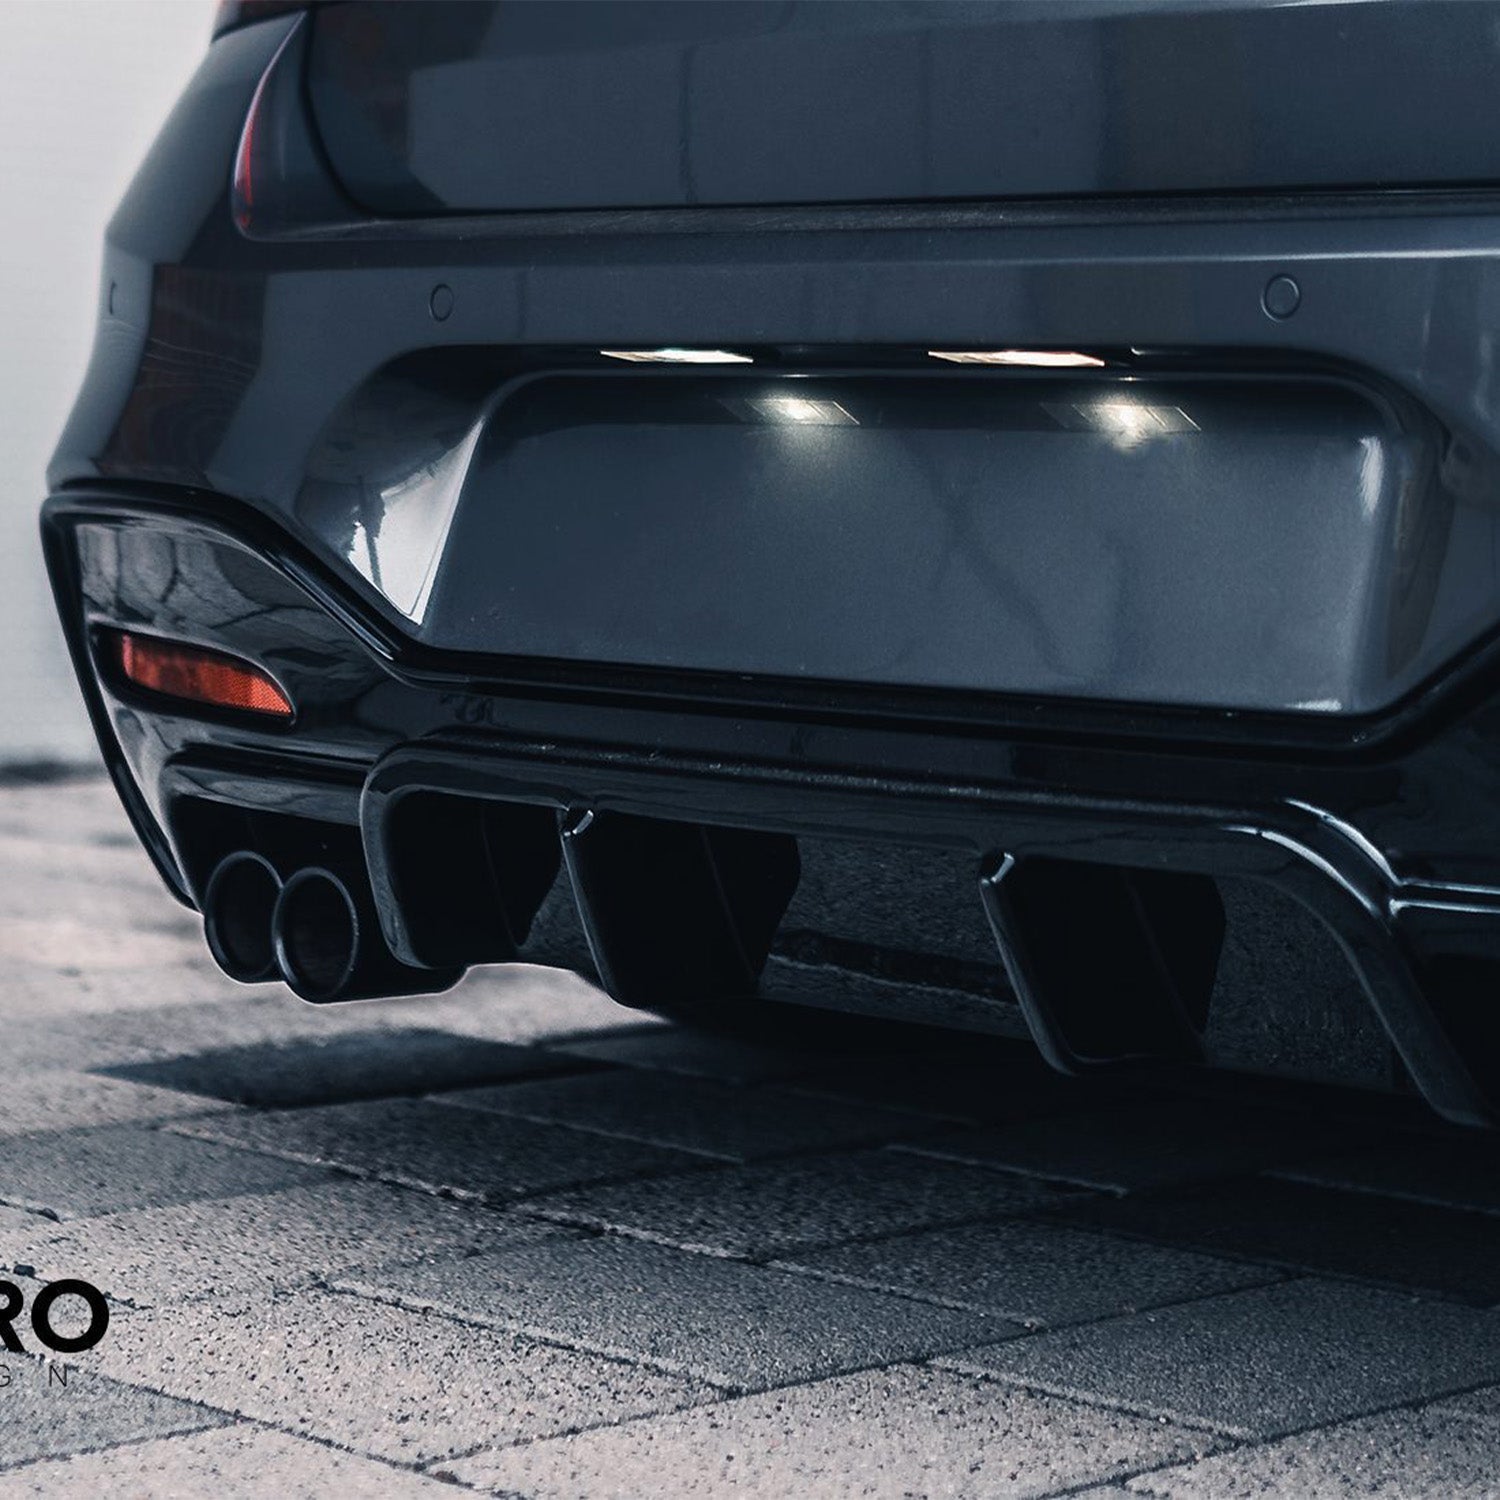 ZAERO Design BMW 1 Series LCI Gloss Black Rear Diffuser